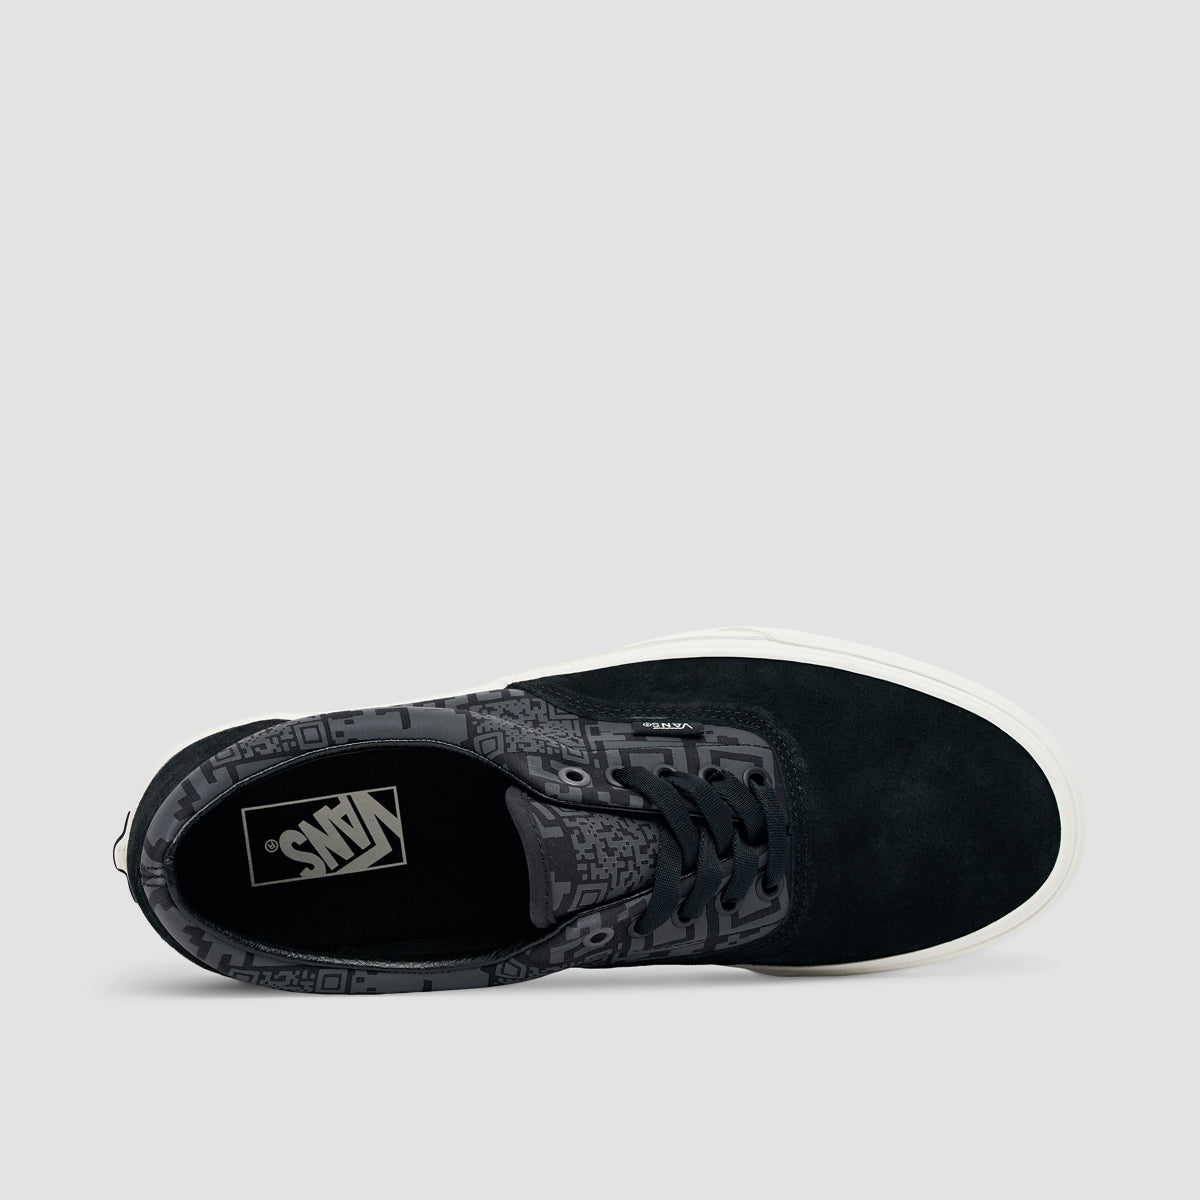 Vans Era Shoes - QR Checkerboard Black/Reflective